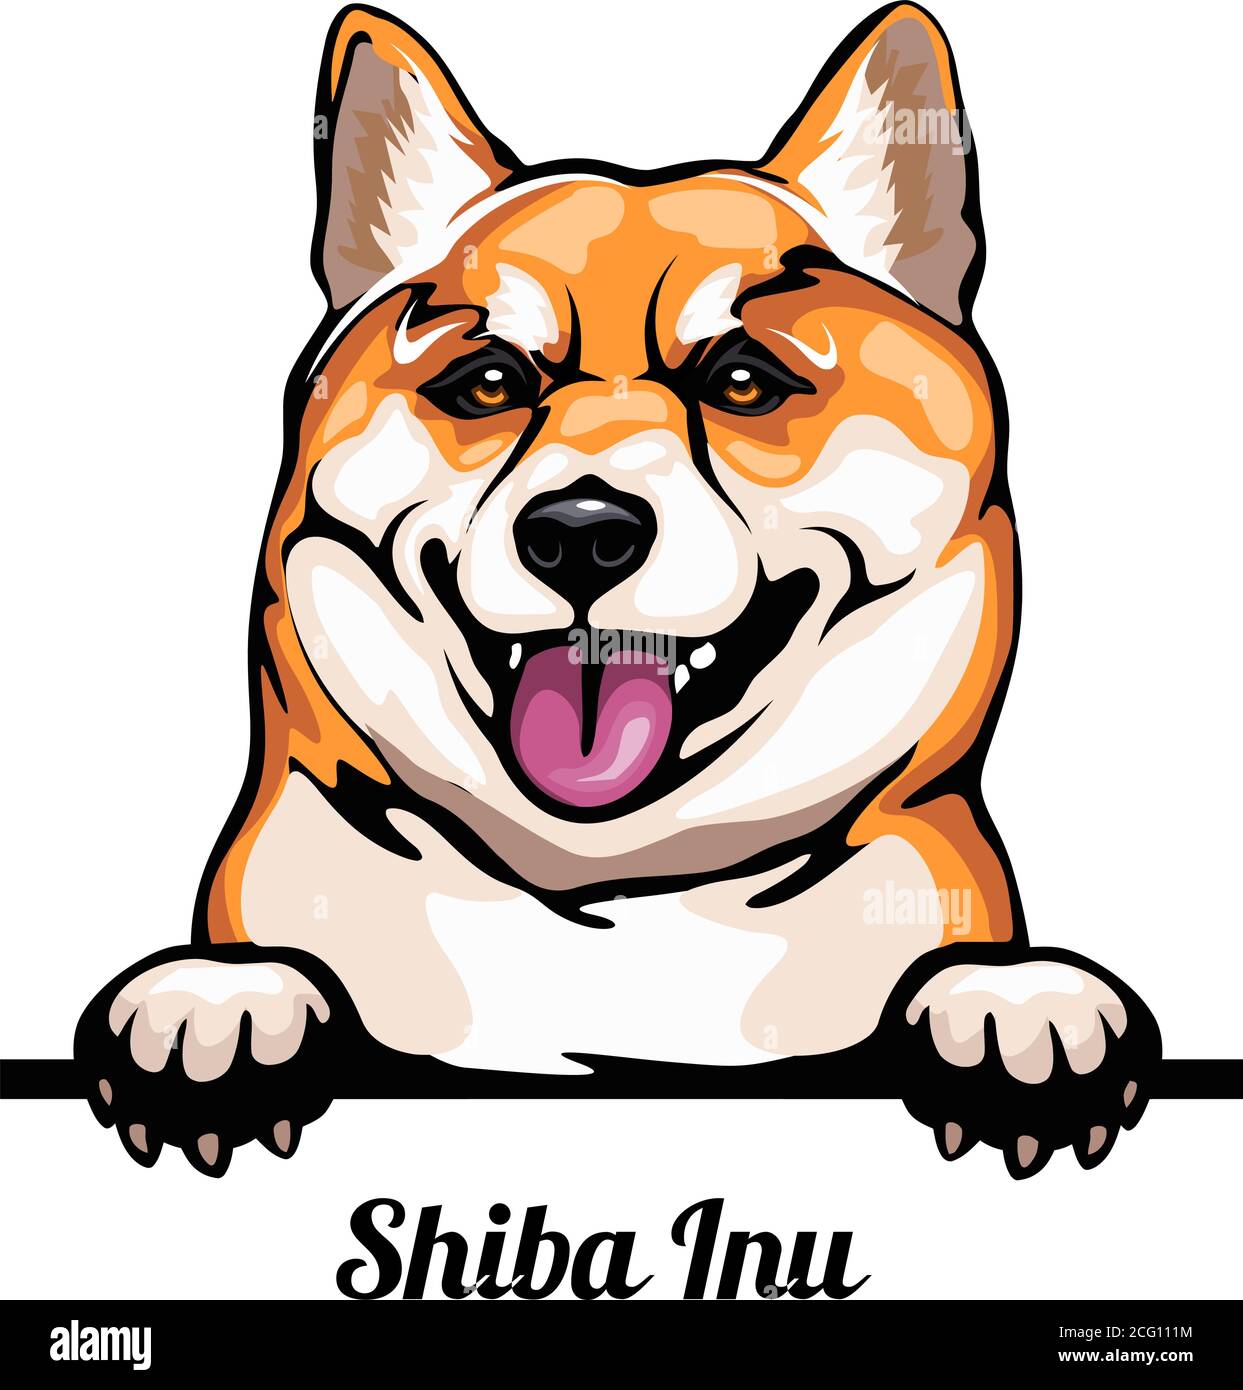 Capo Shiba Inu - razza del cane. Immagine a colori di una testa di cani isolata su uno sfondo bianco Illustrazione Vettoriale